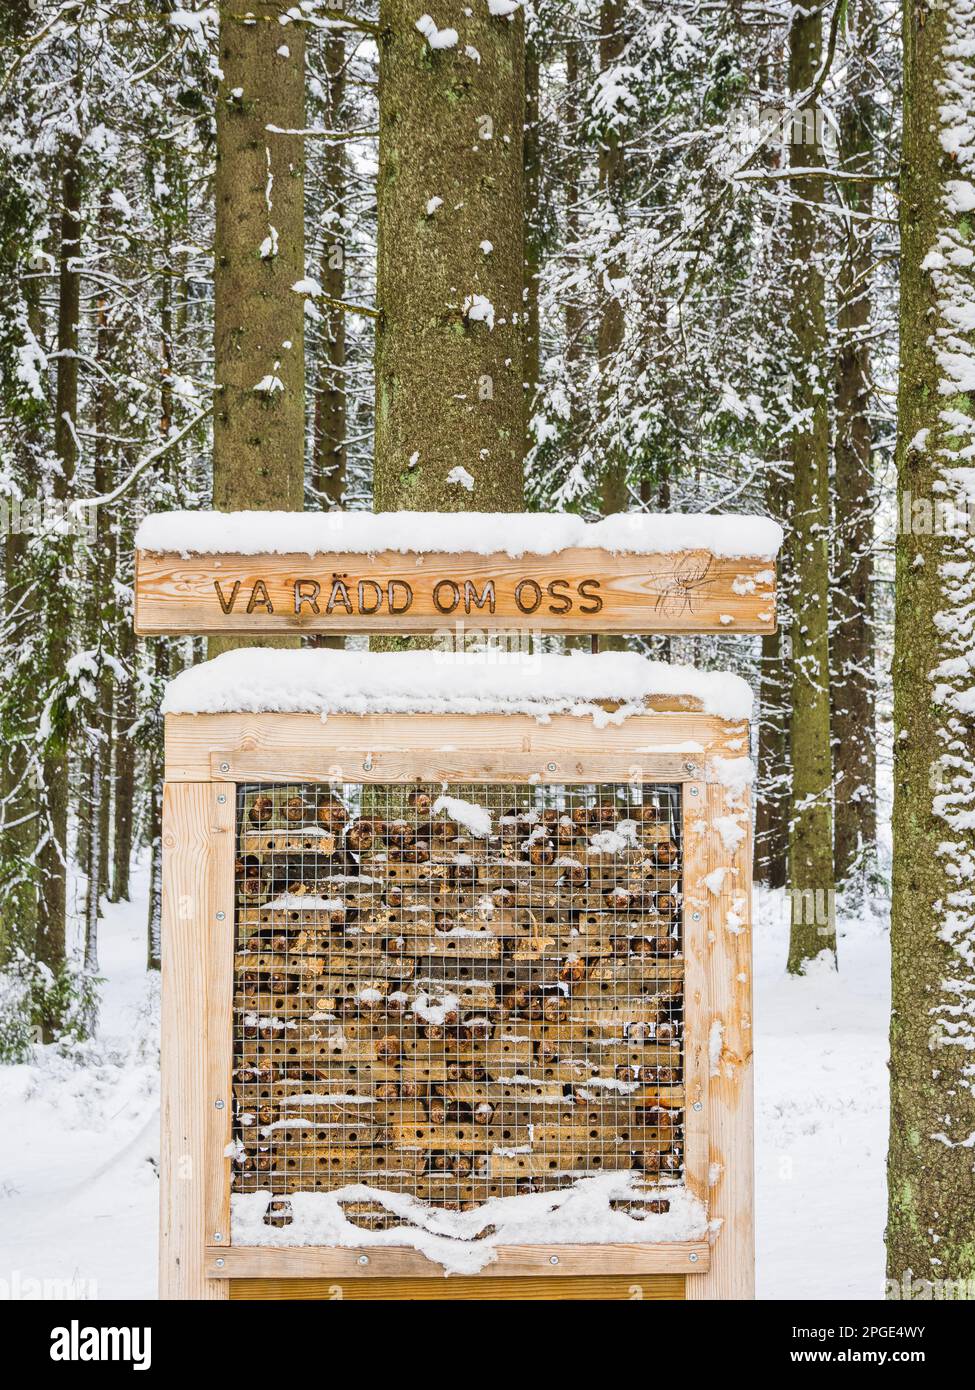 Une scène hivernale paisible en Suède, avec un magnifique conifères et un hôtel d'insectes niché dans la forêt enneigée de pinaceae. Banque D'Images